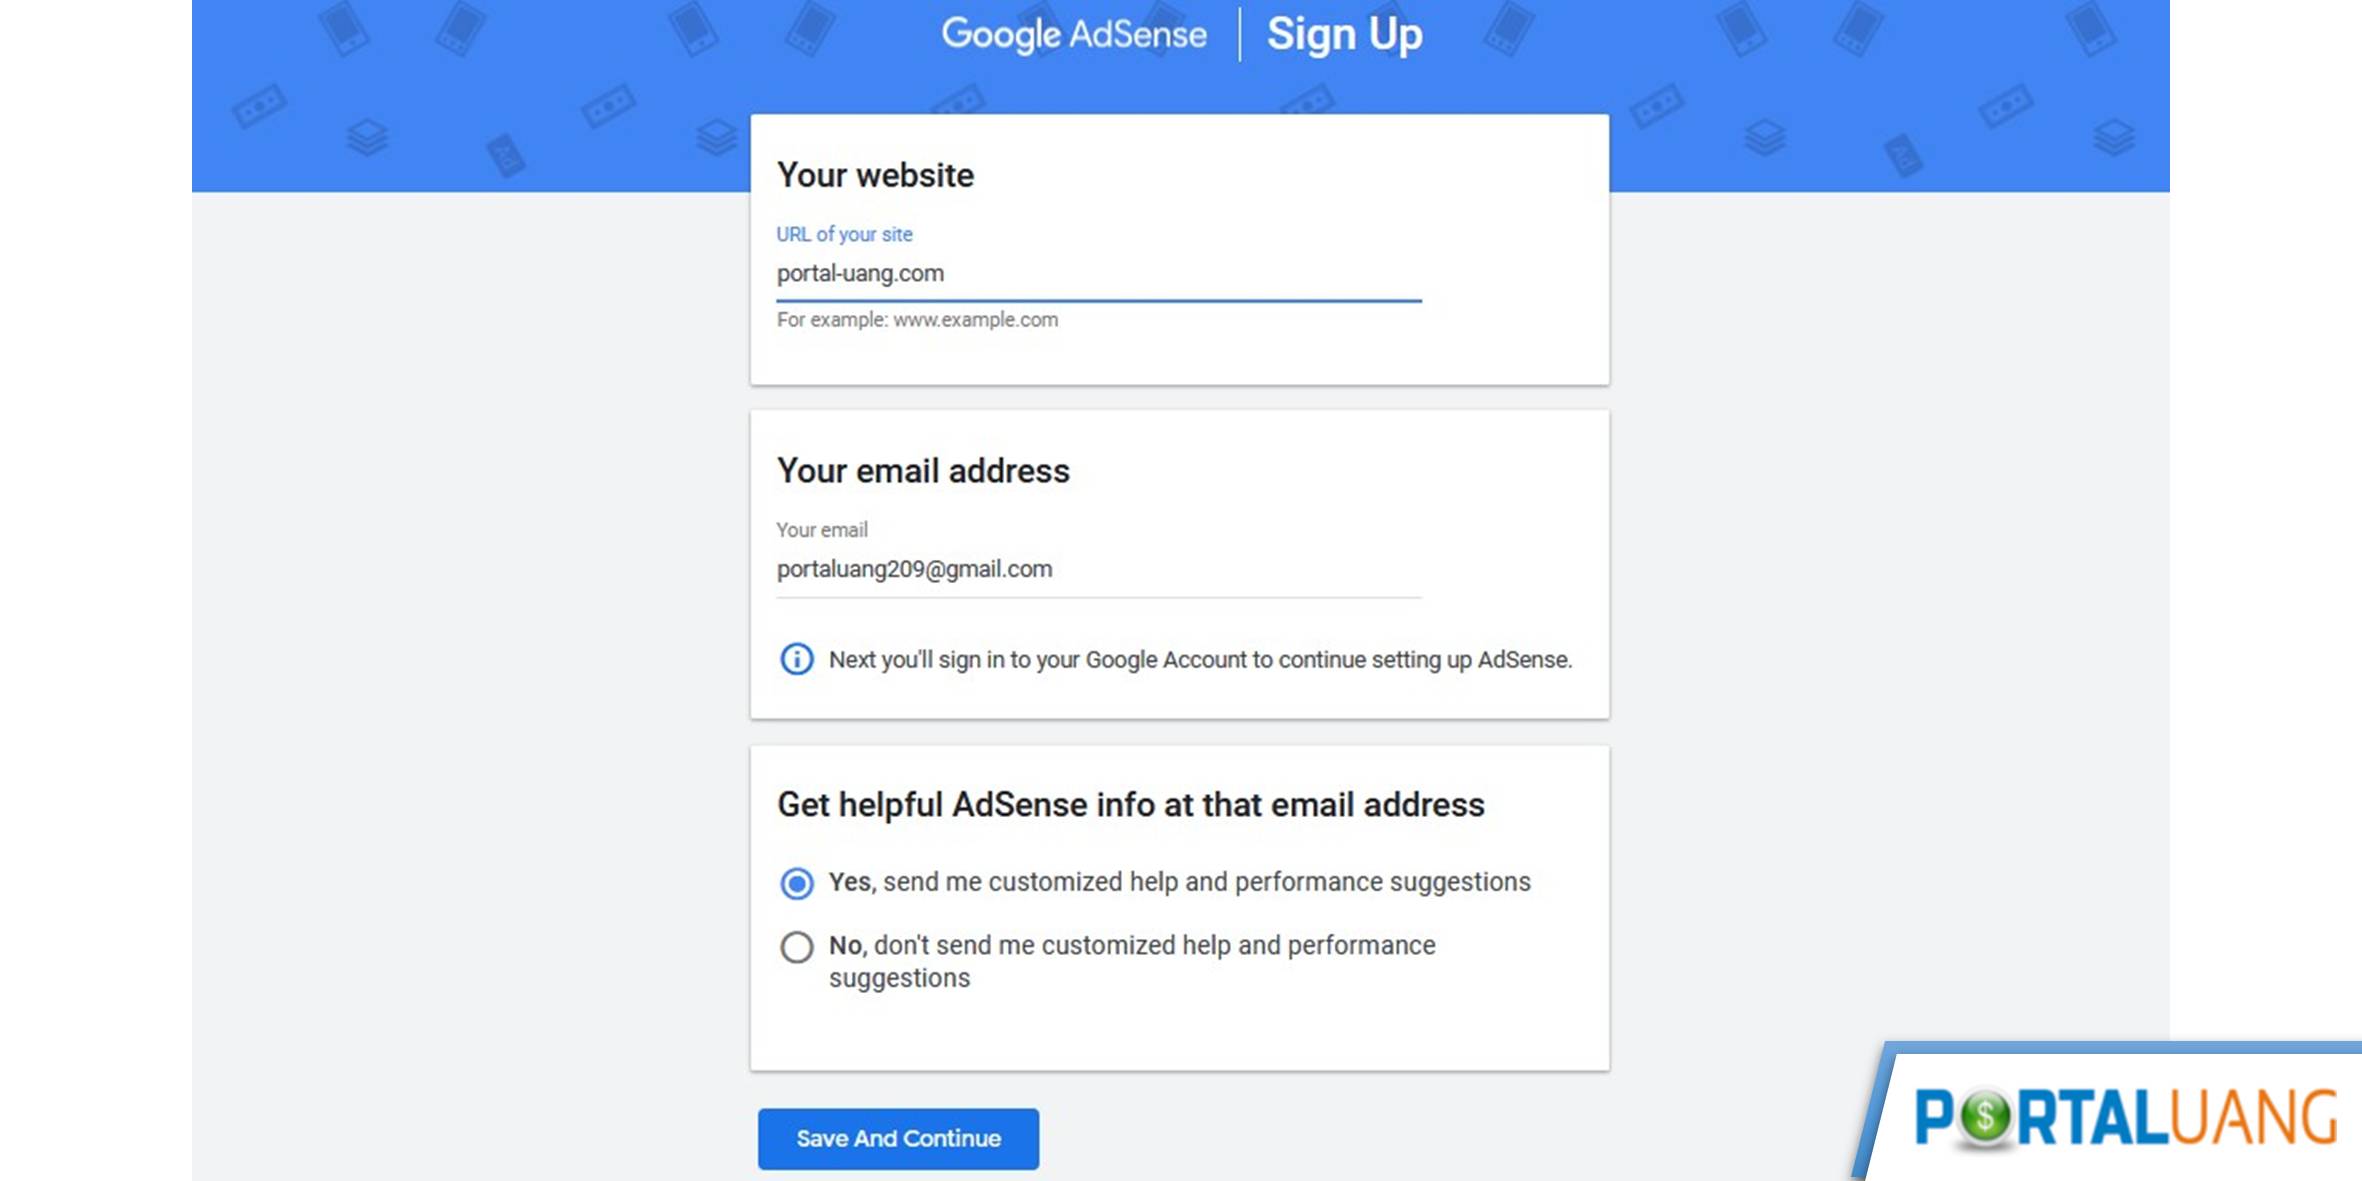 Cara Mendaftar Google Adsense